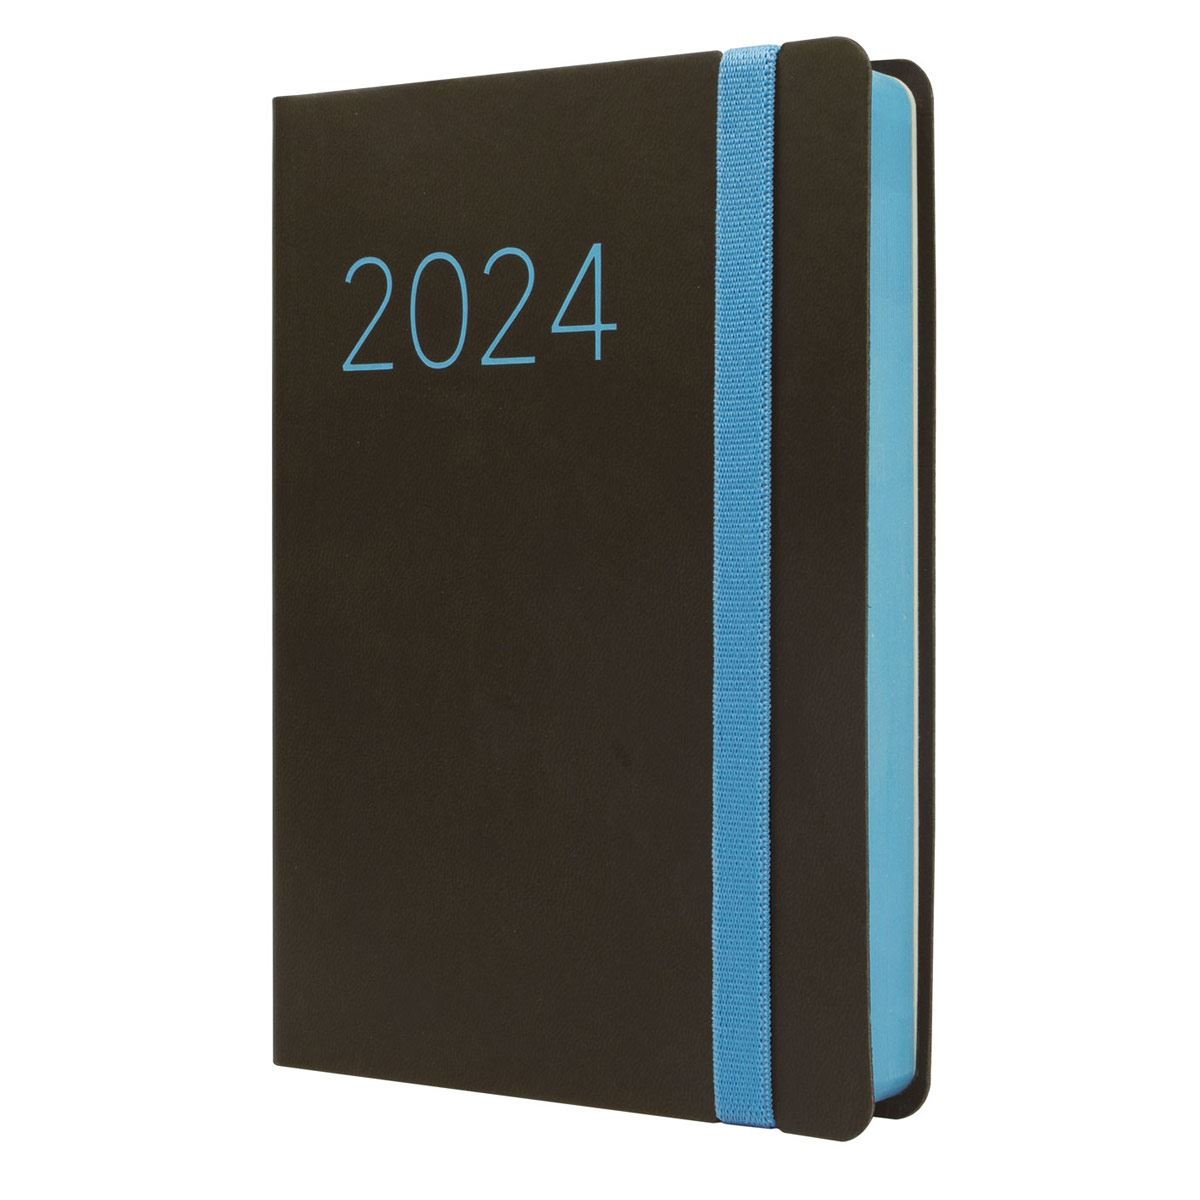 Agenda 2024 Diaria Para Imprimir 1 Dia Por Pagina Blanco Y Negro PDF Tamaño  A5 Planeadores Mensuales MUY COMPLETA 